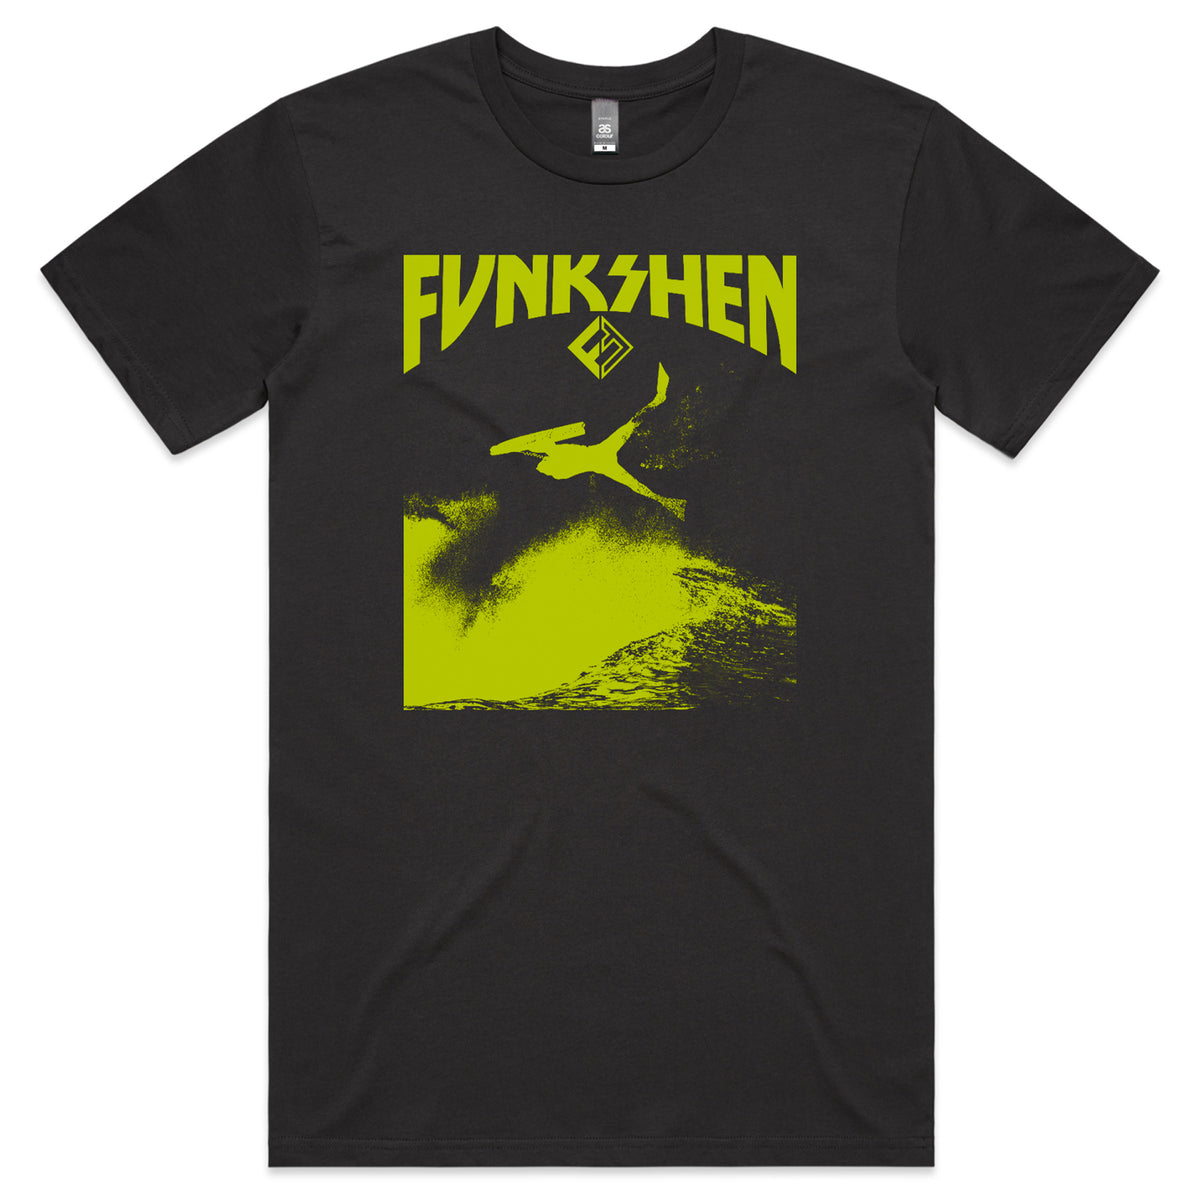 Funkshen INVERT T-Shirt - Coal